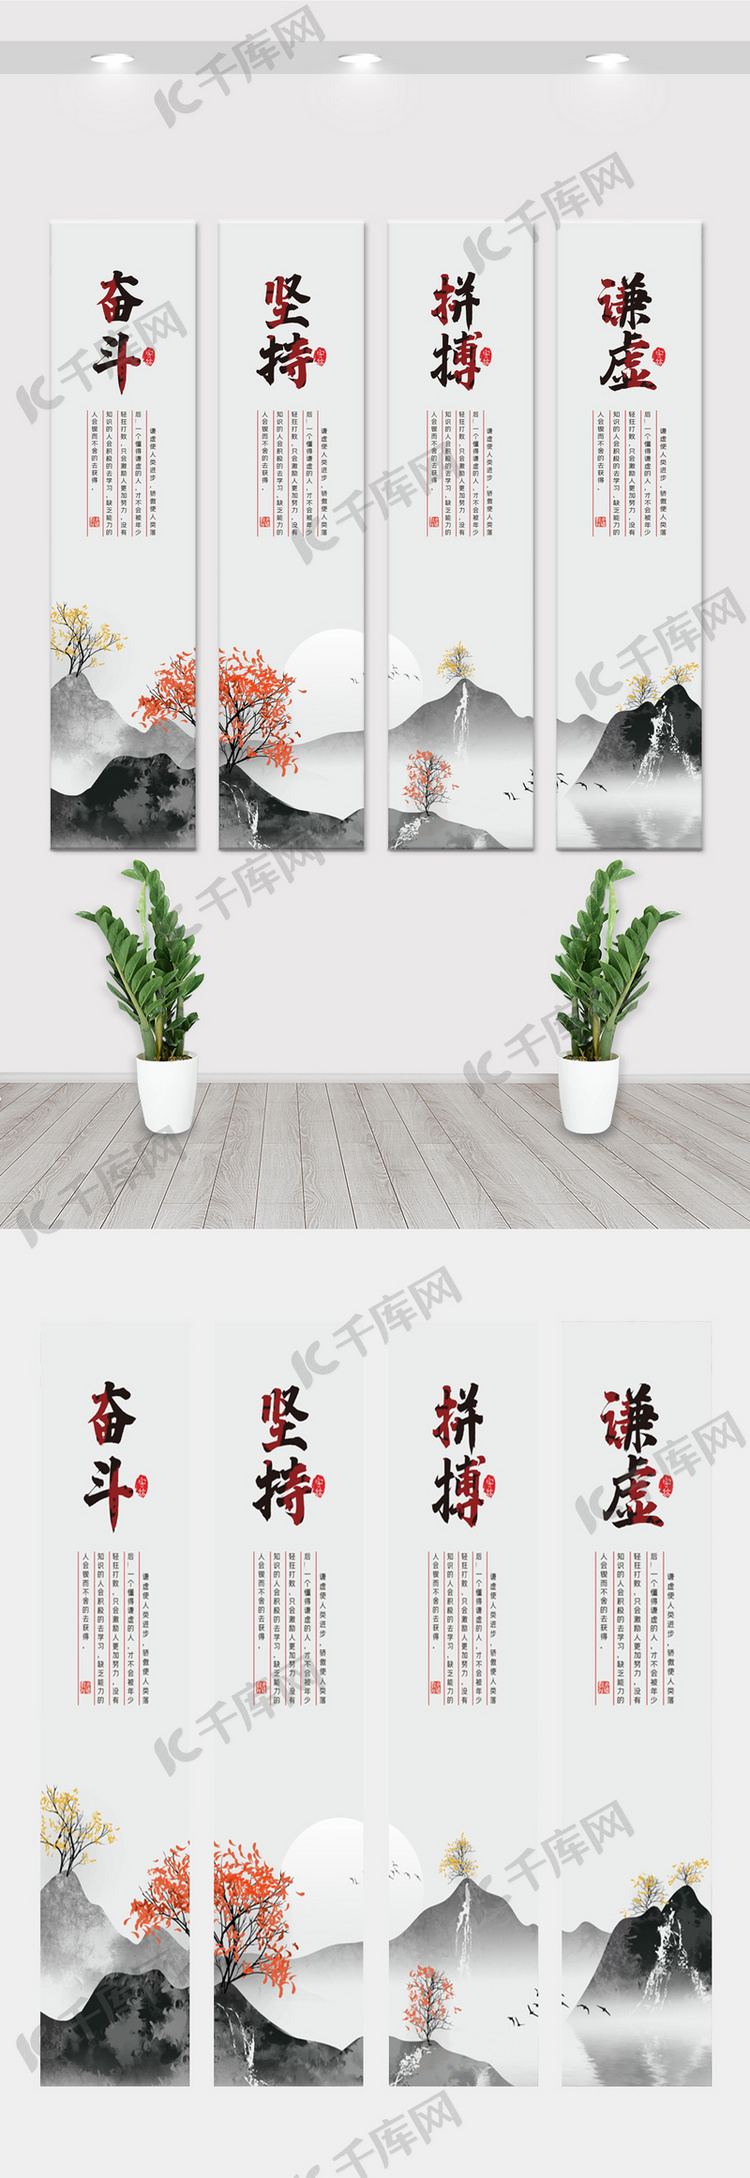 中国风水墨企业宣传挂画展板素材